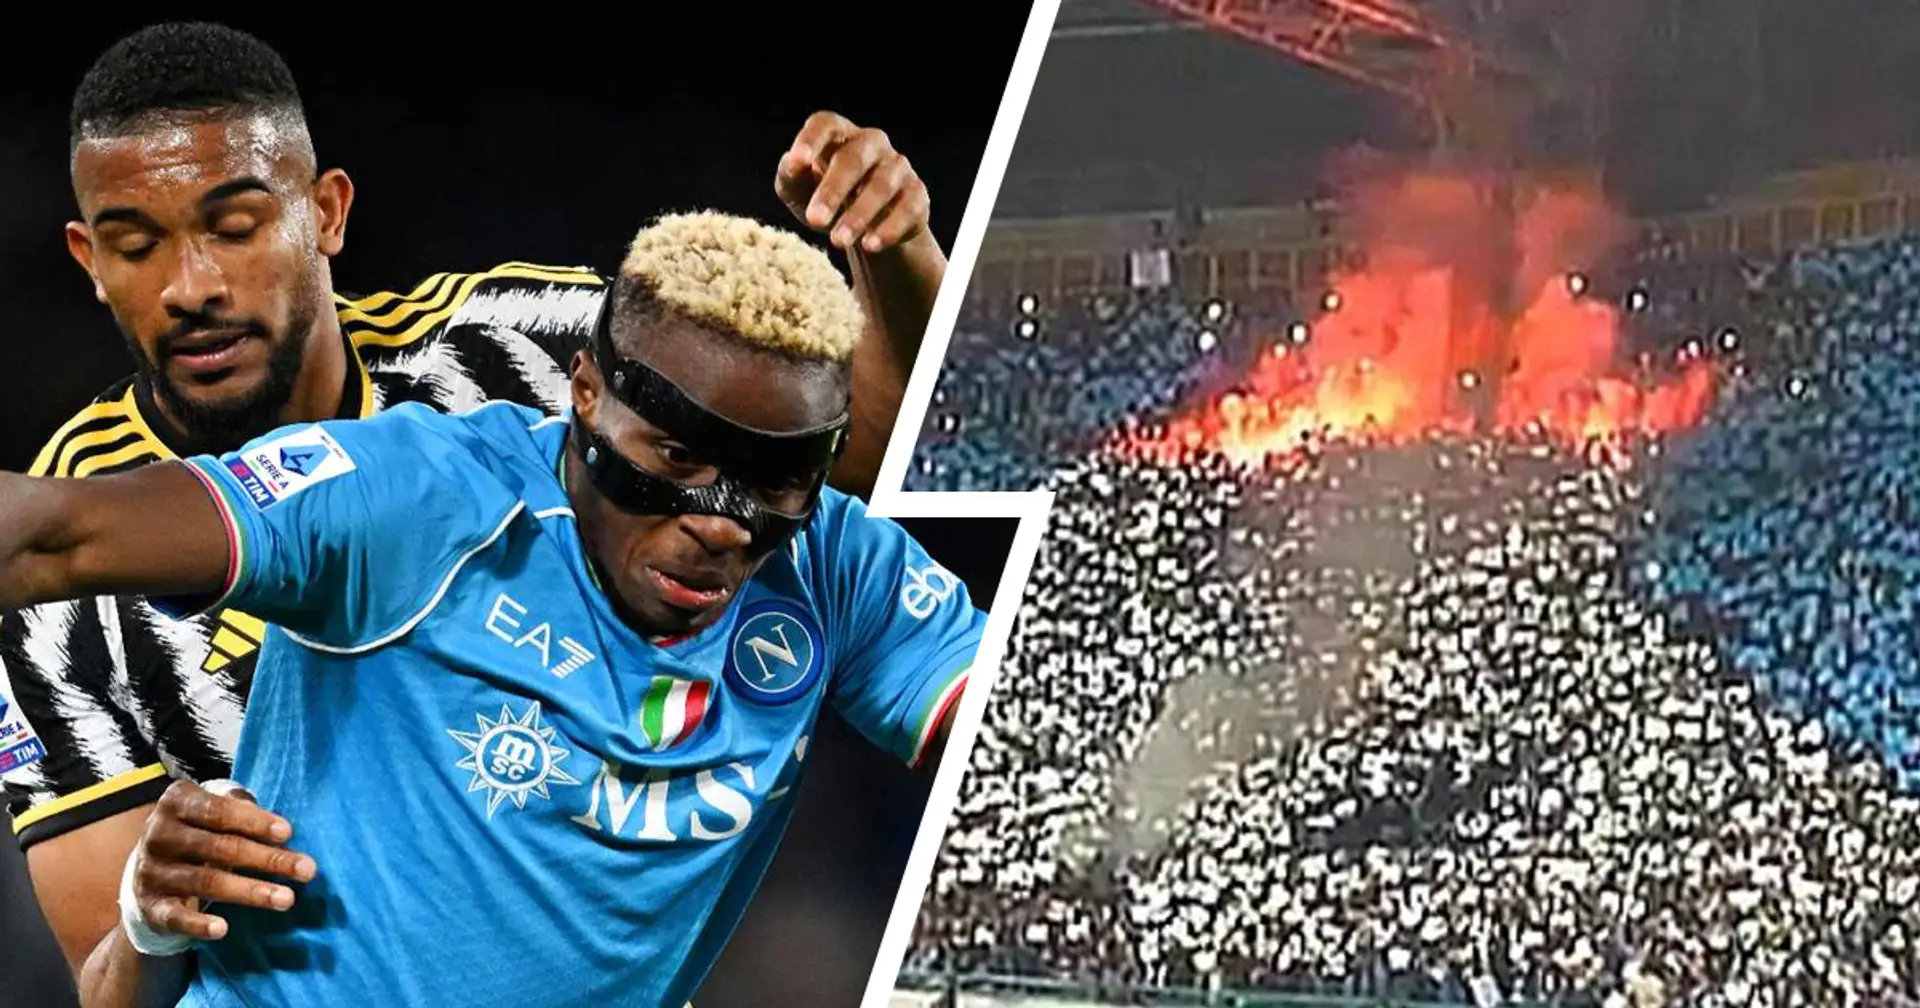 Juve multata dopo il Napoli, l'indignazione dei tifosi per l'ennesimo torto: "E lo juventino colpito dal seggiolino?"